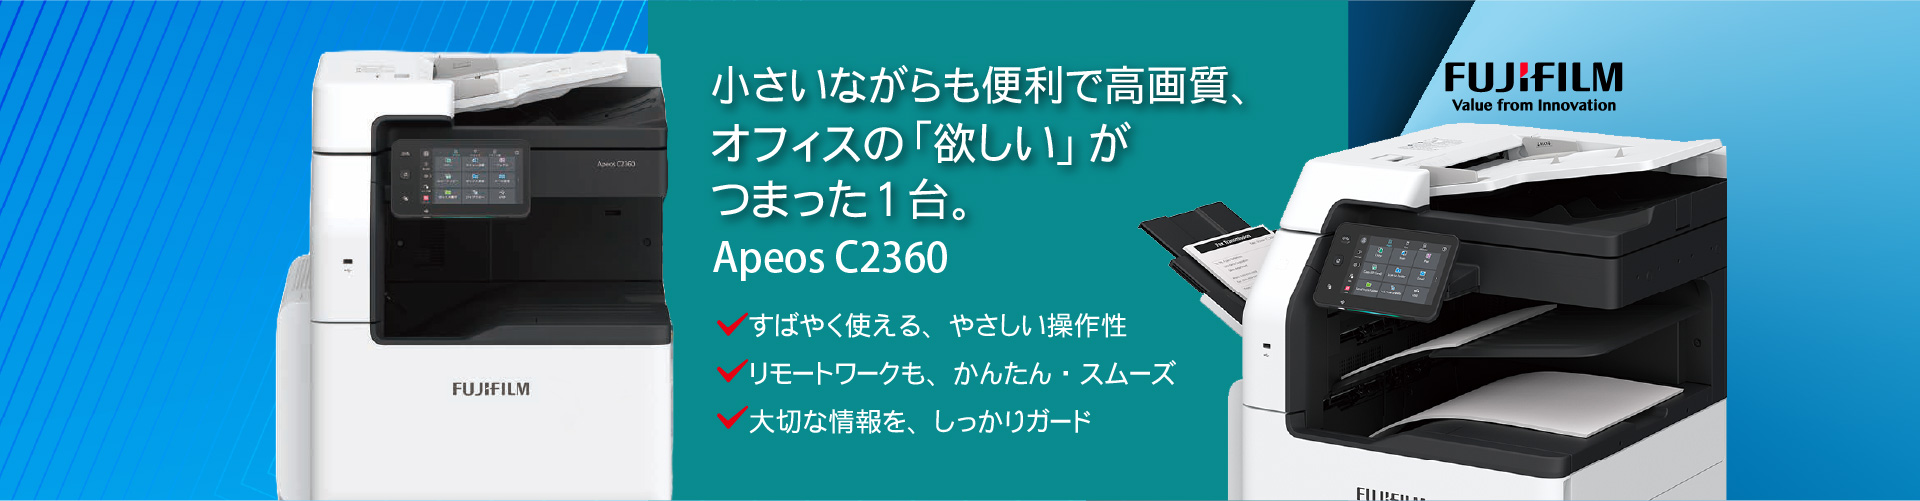 オフィス向けコピー機・複合機！
ApeosPort C2360　身近なカラー複合機。